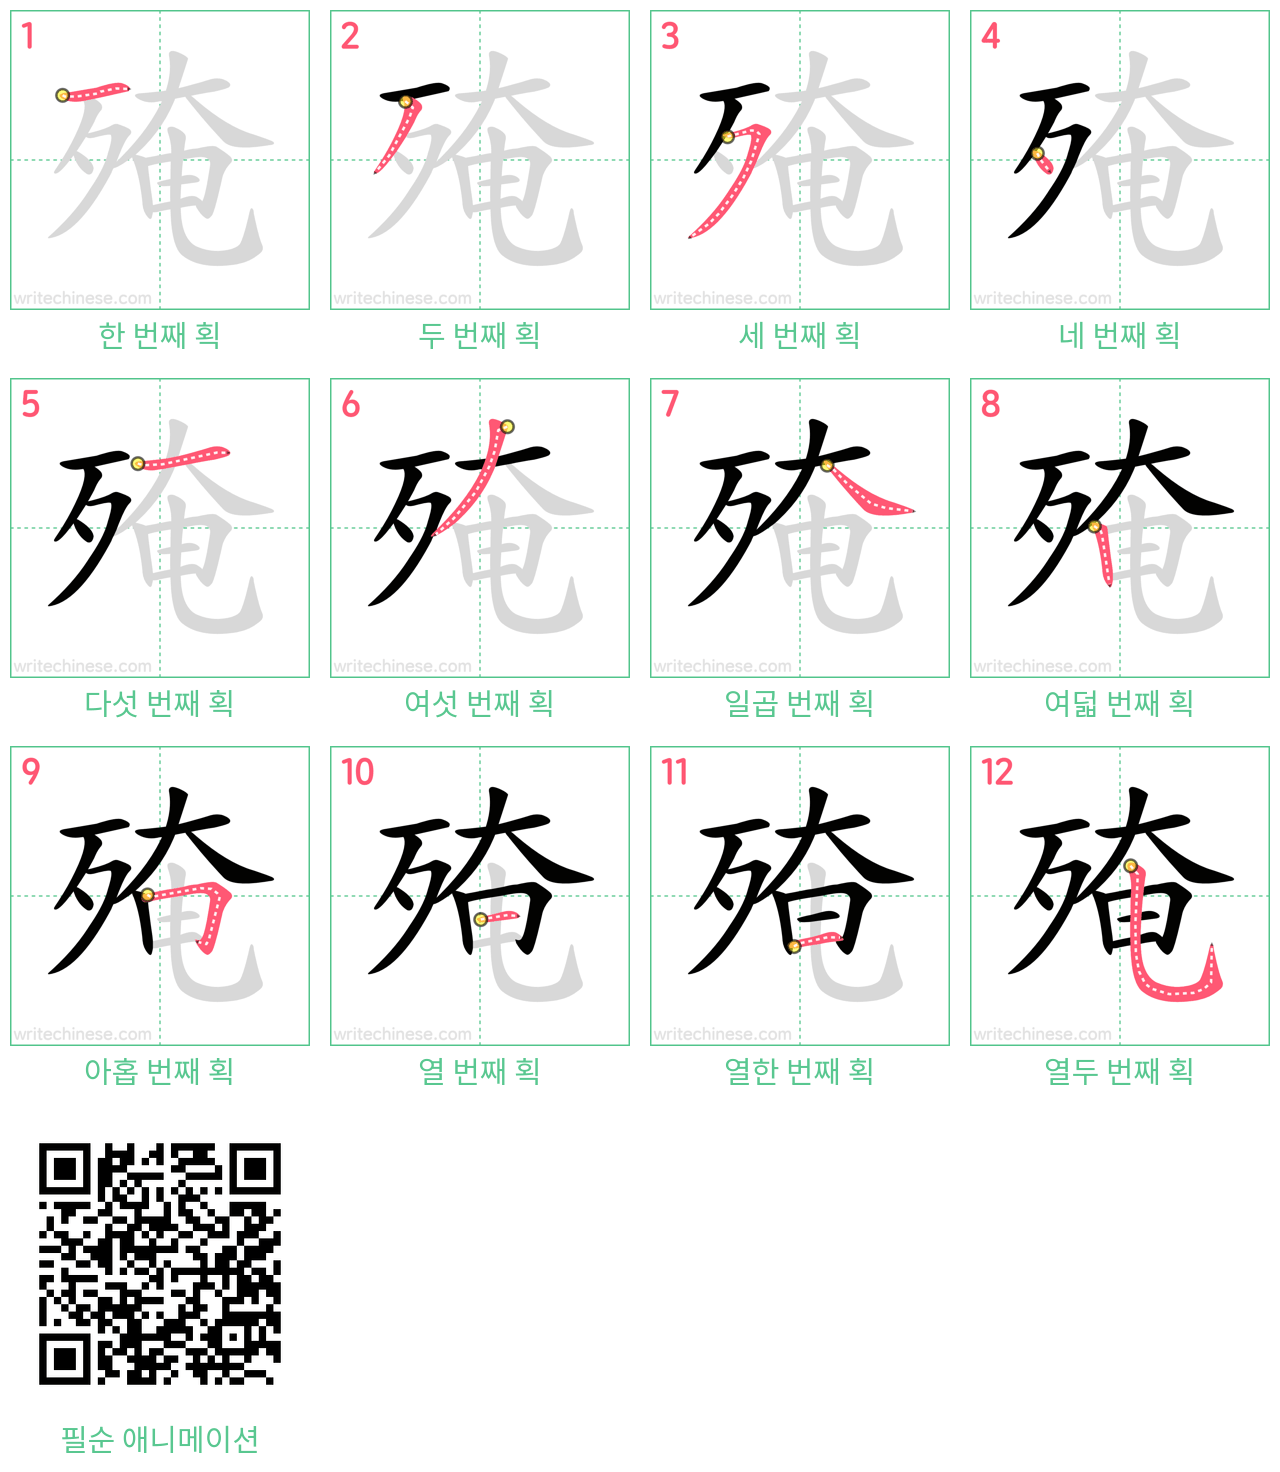 殗 step-by-step stroke order diagrams